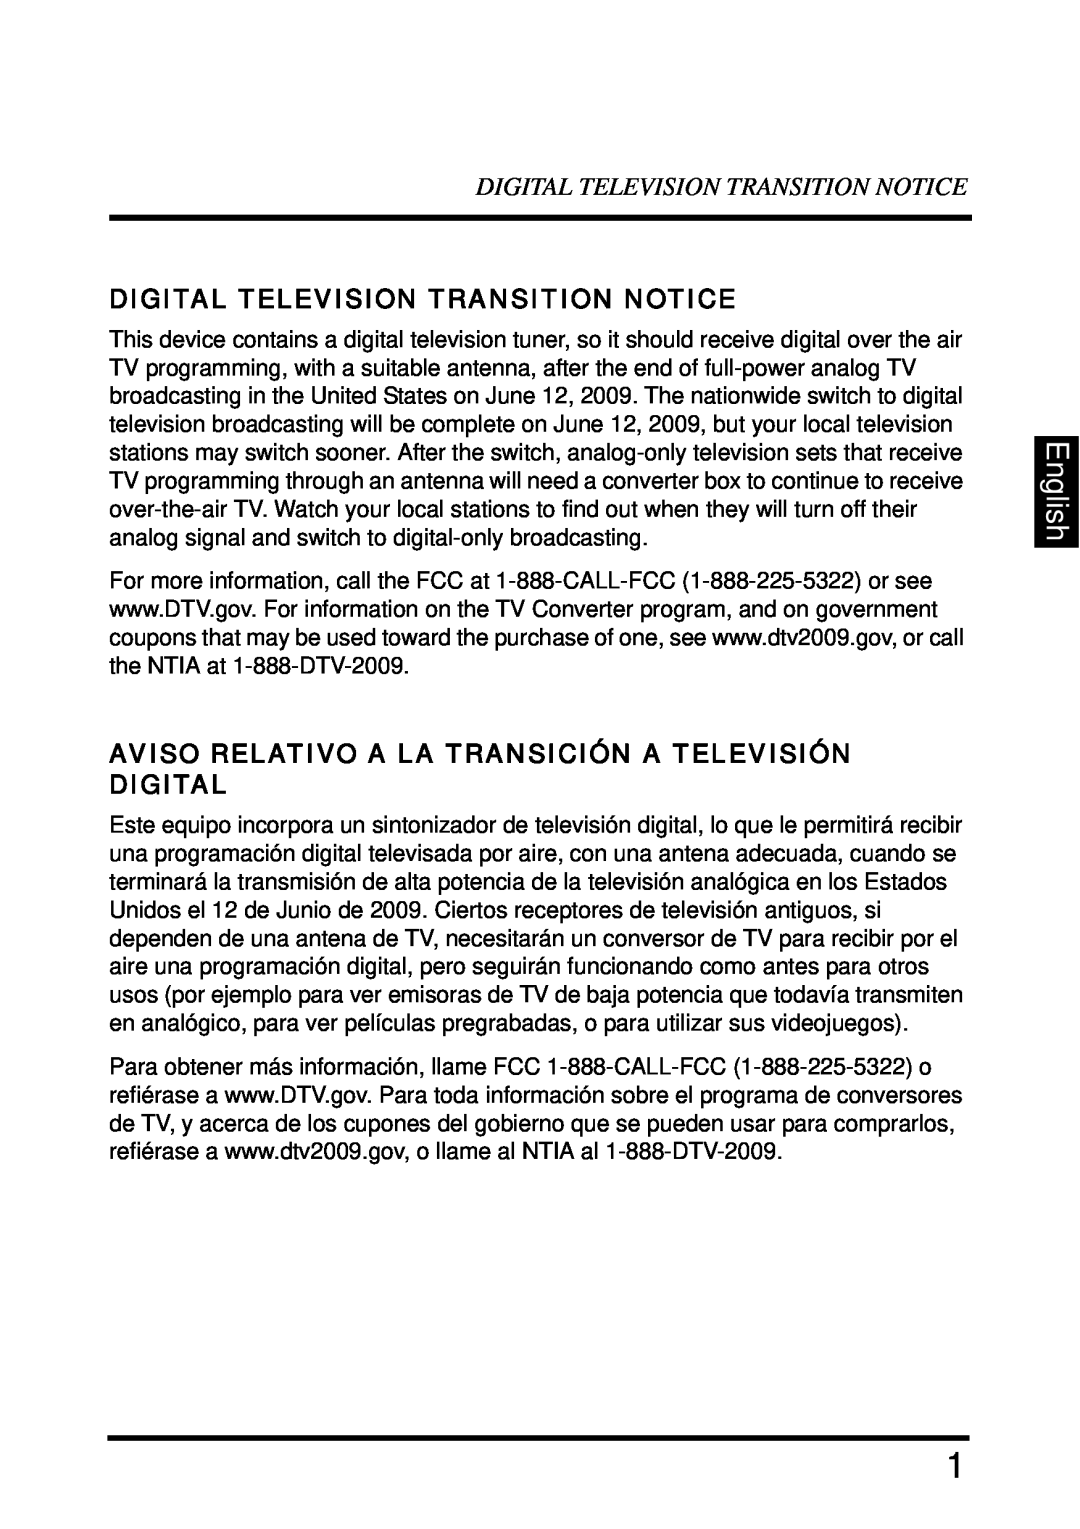 Westinghouse SK-32H640G English, Digital Television Transition Notice, Aviso Relativo A La Transición A Televisión Digital 